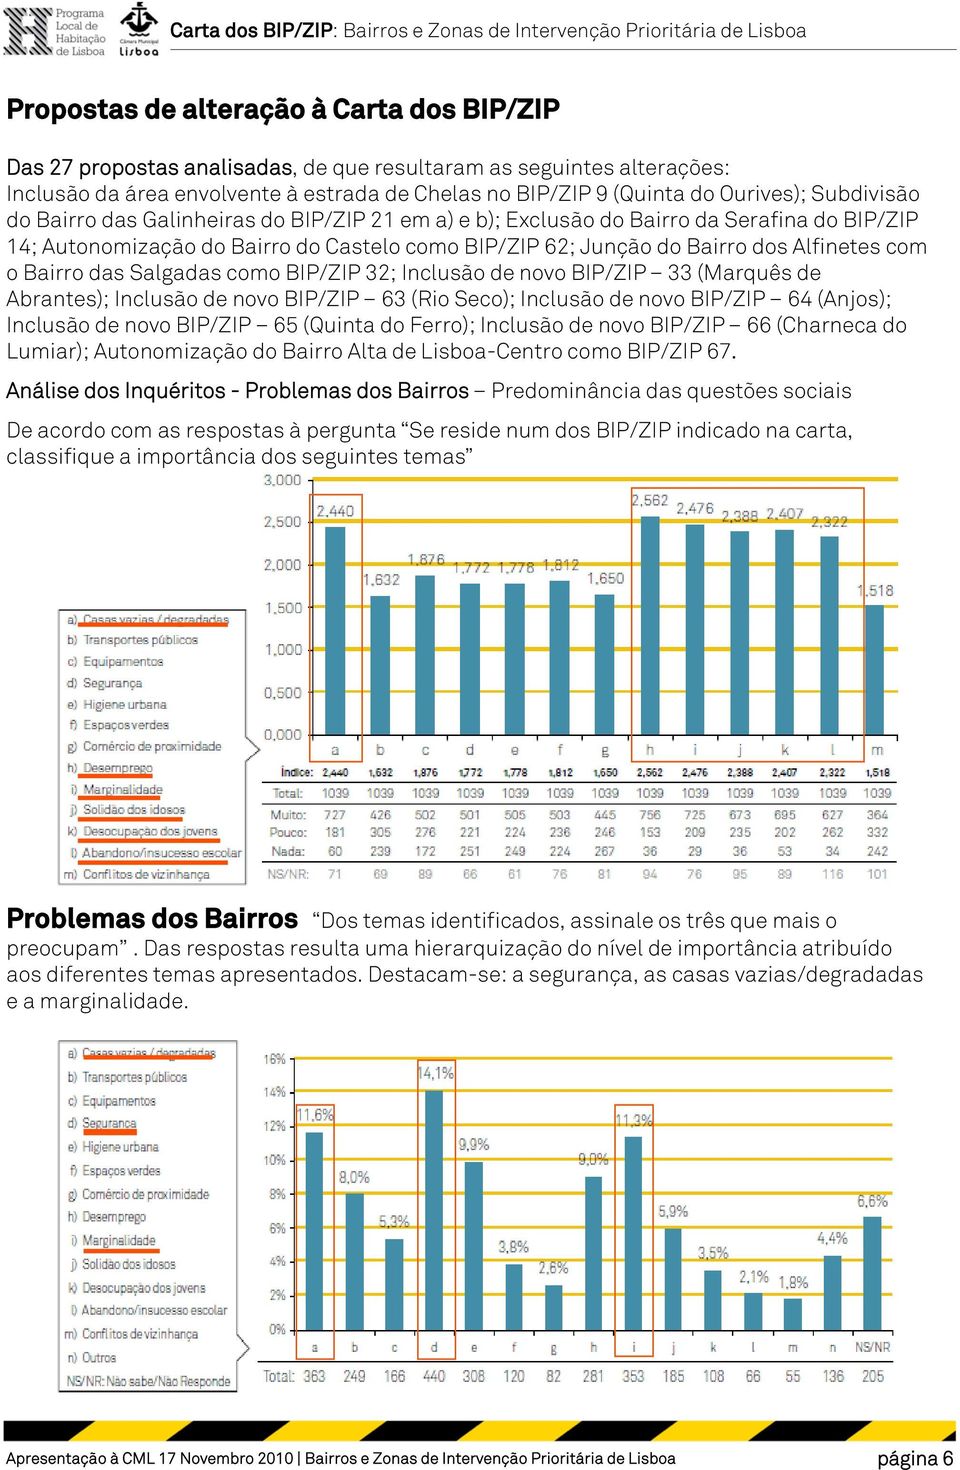 Bairro das Salgadas como BIP/ZIP 32; Inclusão de novo BIP/ZIP 33 (Marquês de Abrantes); Inclusão de novo BIP/ZIP 63 (Rio Seco); Inclusão de novo BIP/ZIP 64 (Anjos); Inclusão de novo BIP/ZIP 65